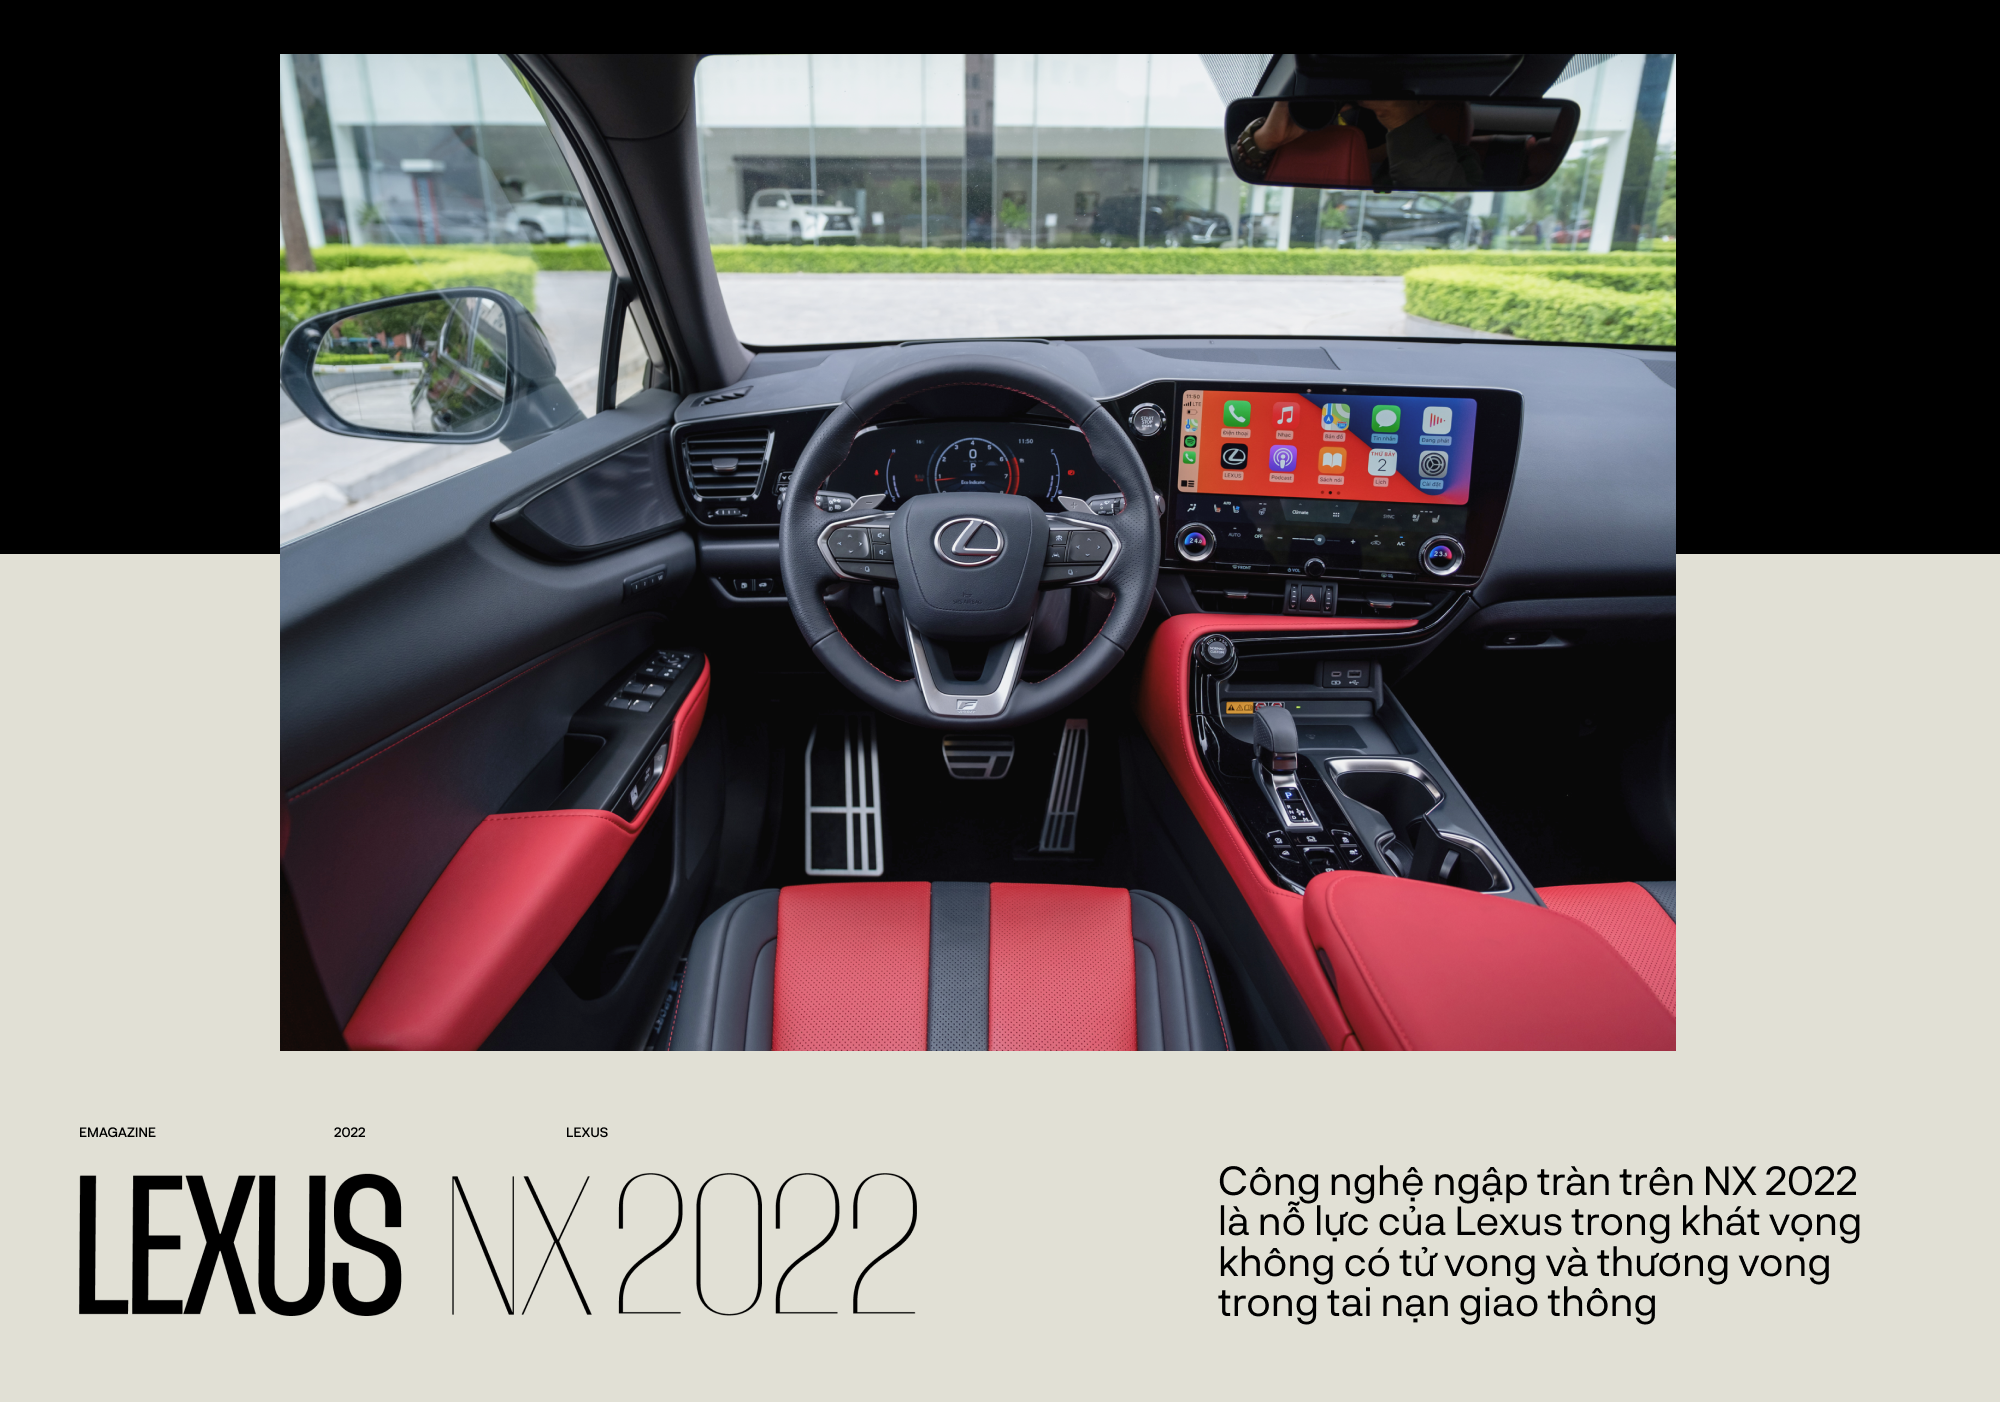 NX thành công nhờ vào những giá trị chưa từng có trên Lexus - Ảnh 11.